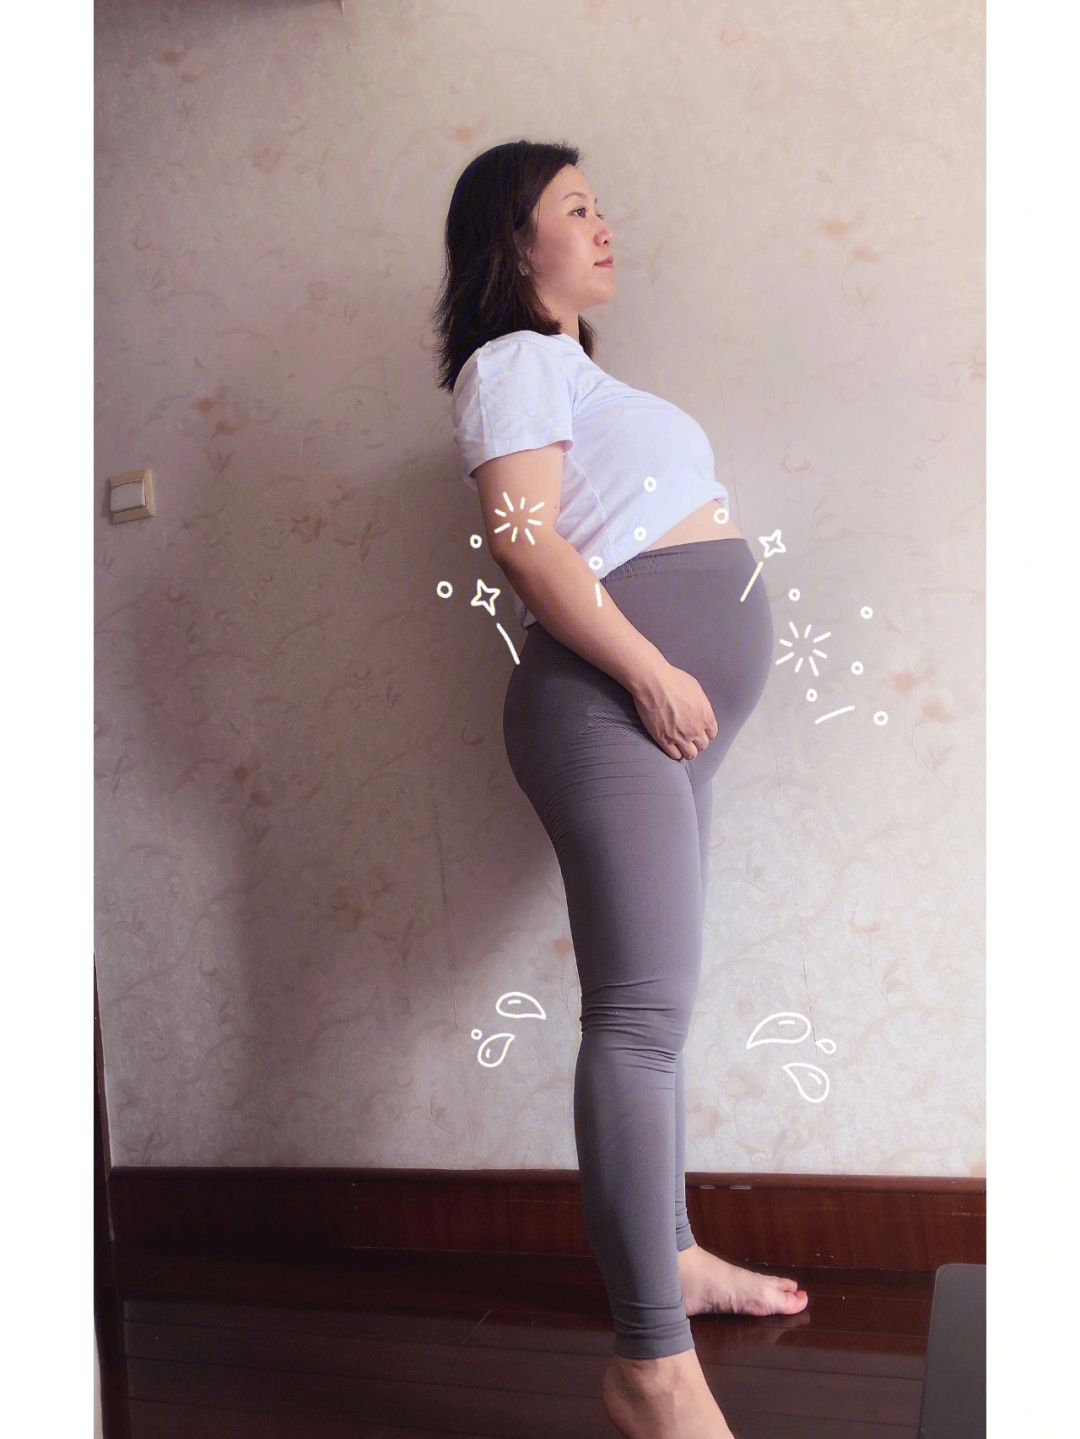 我的大孕肚31周图片